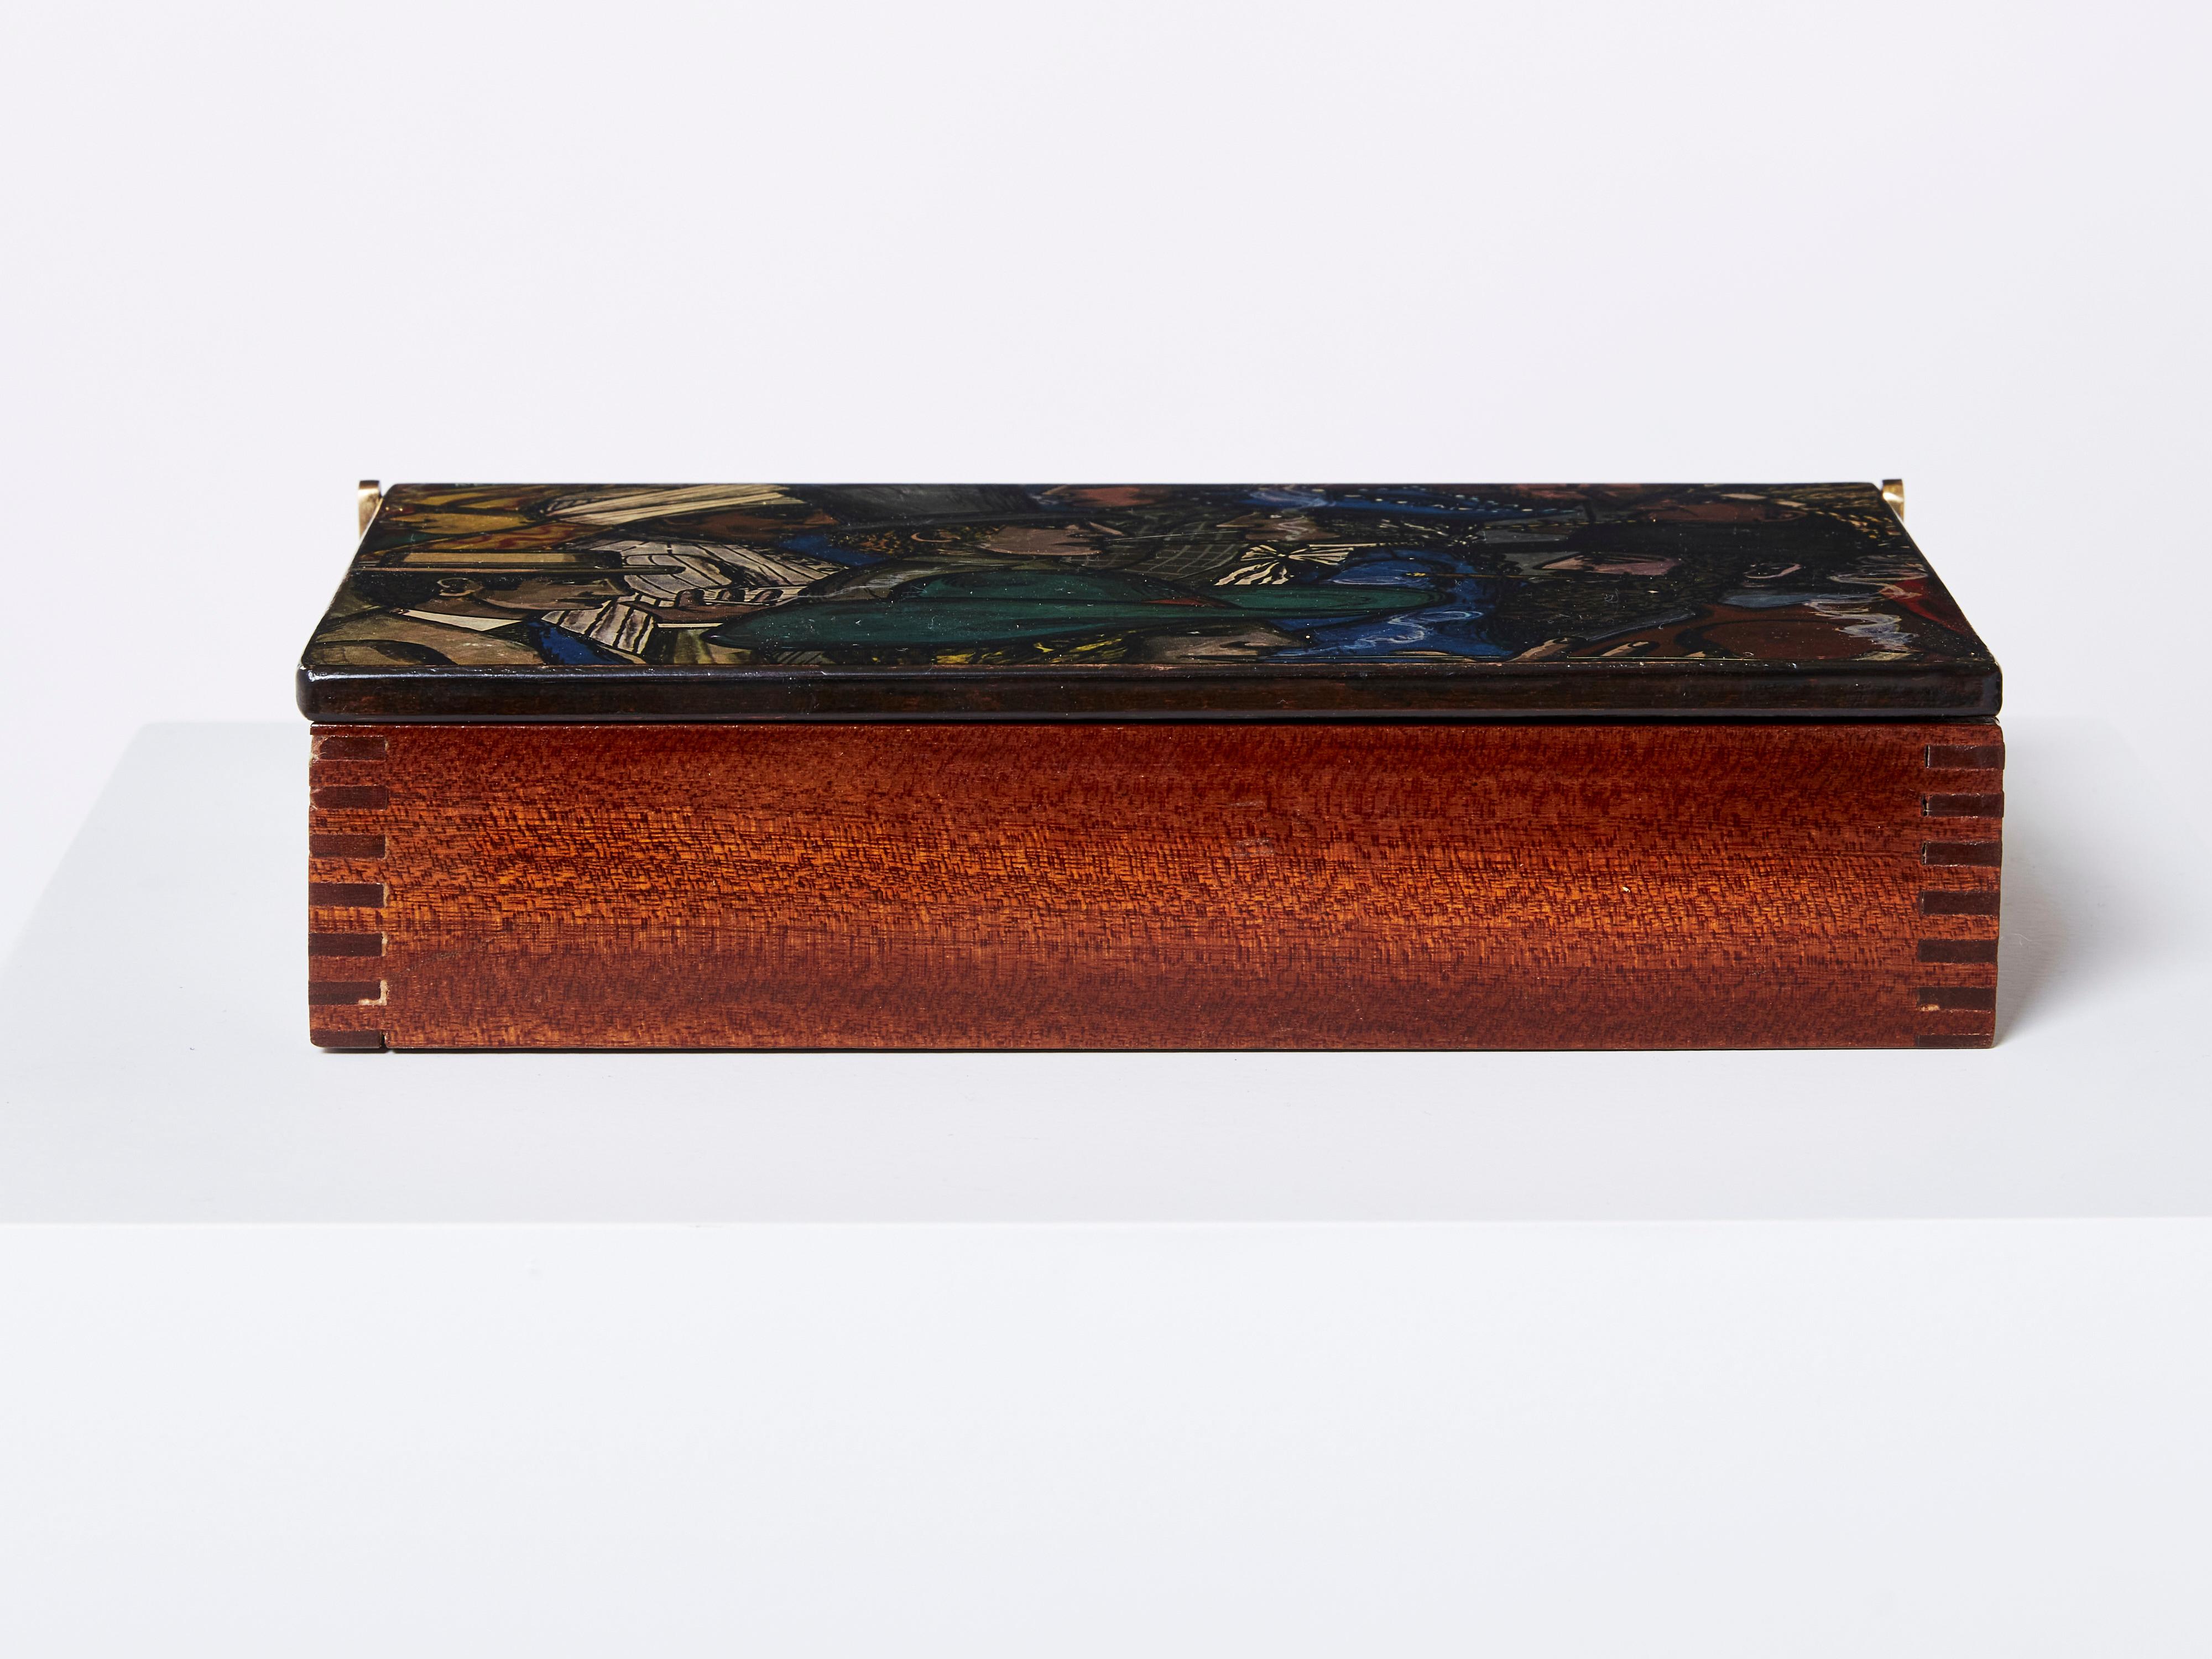 Italian Piero Fornasetti Mahogany Painted Wood Box 1950 For Sale